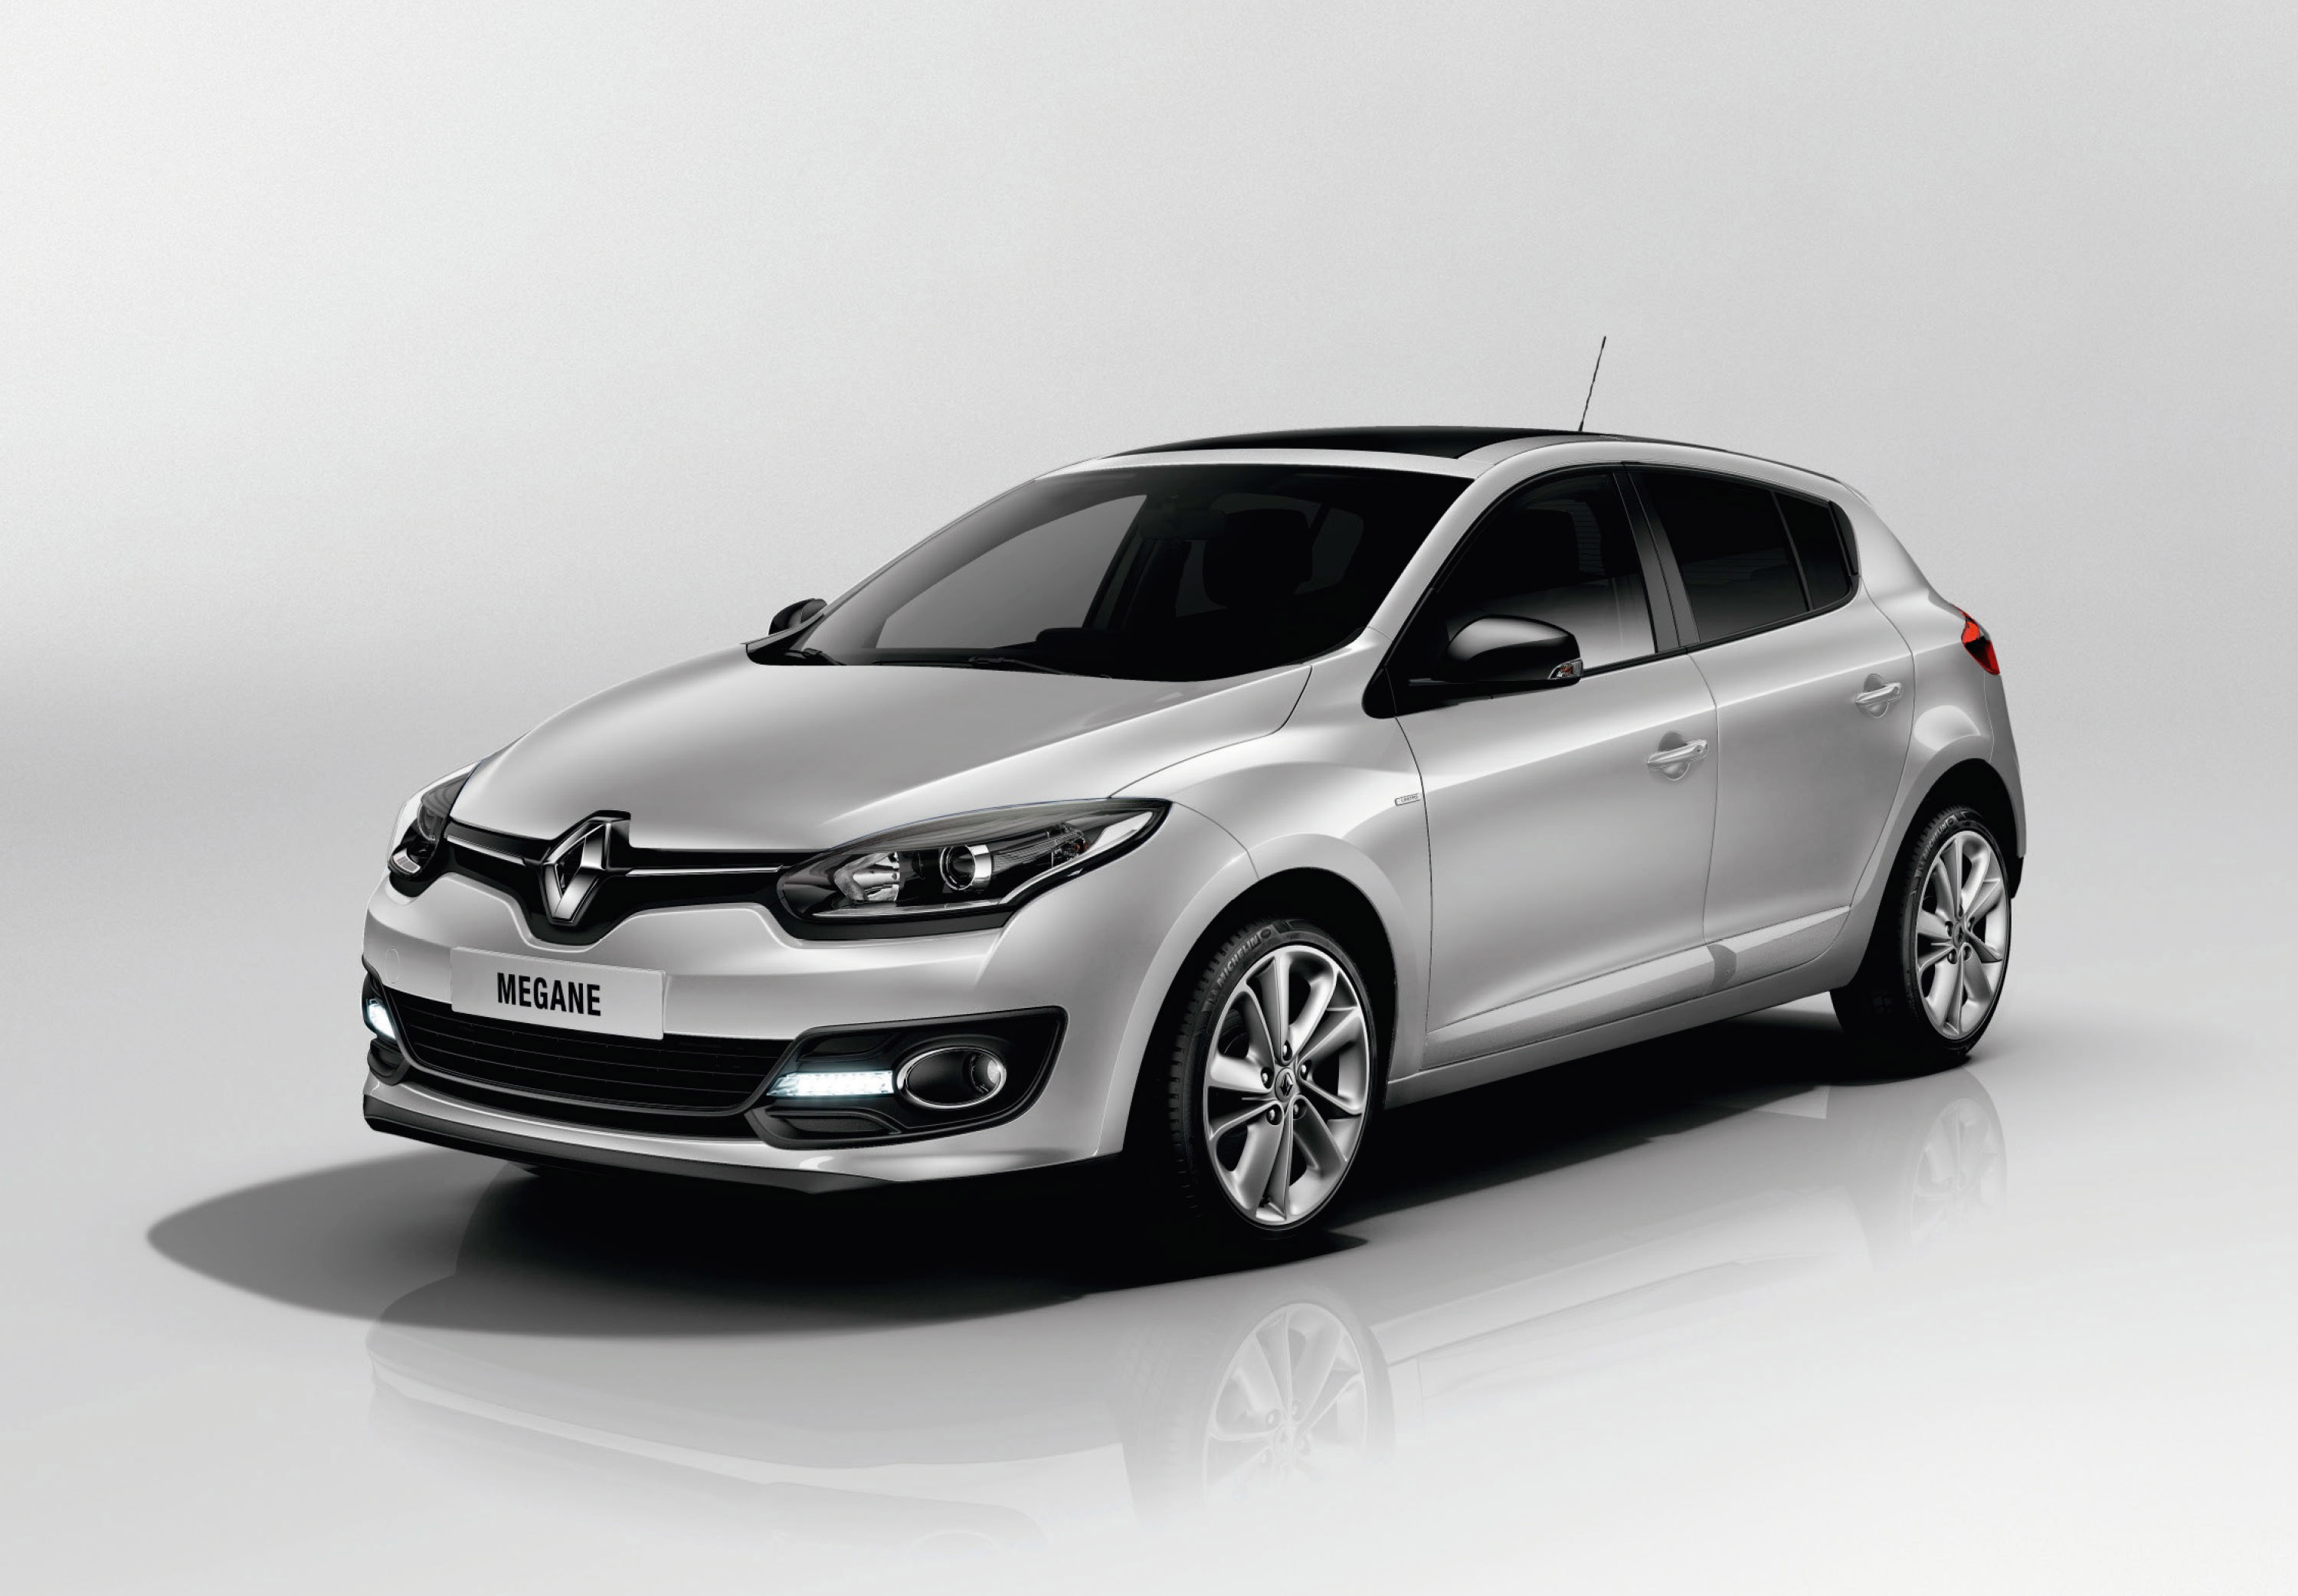 Renault Megane Hatchback reviews 2015